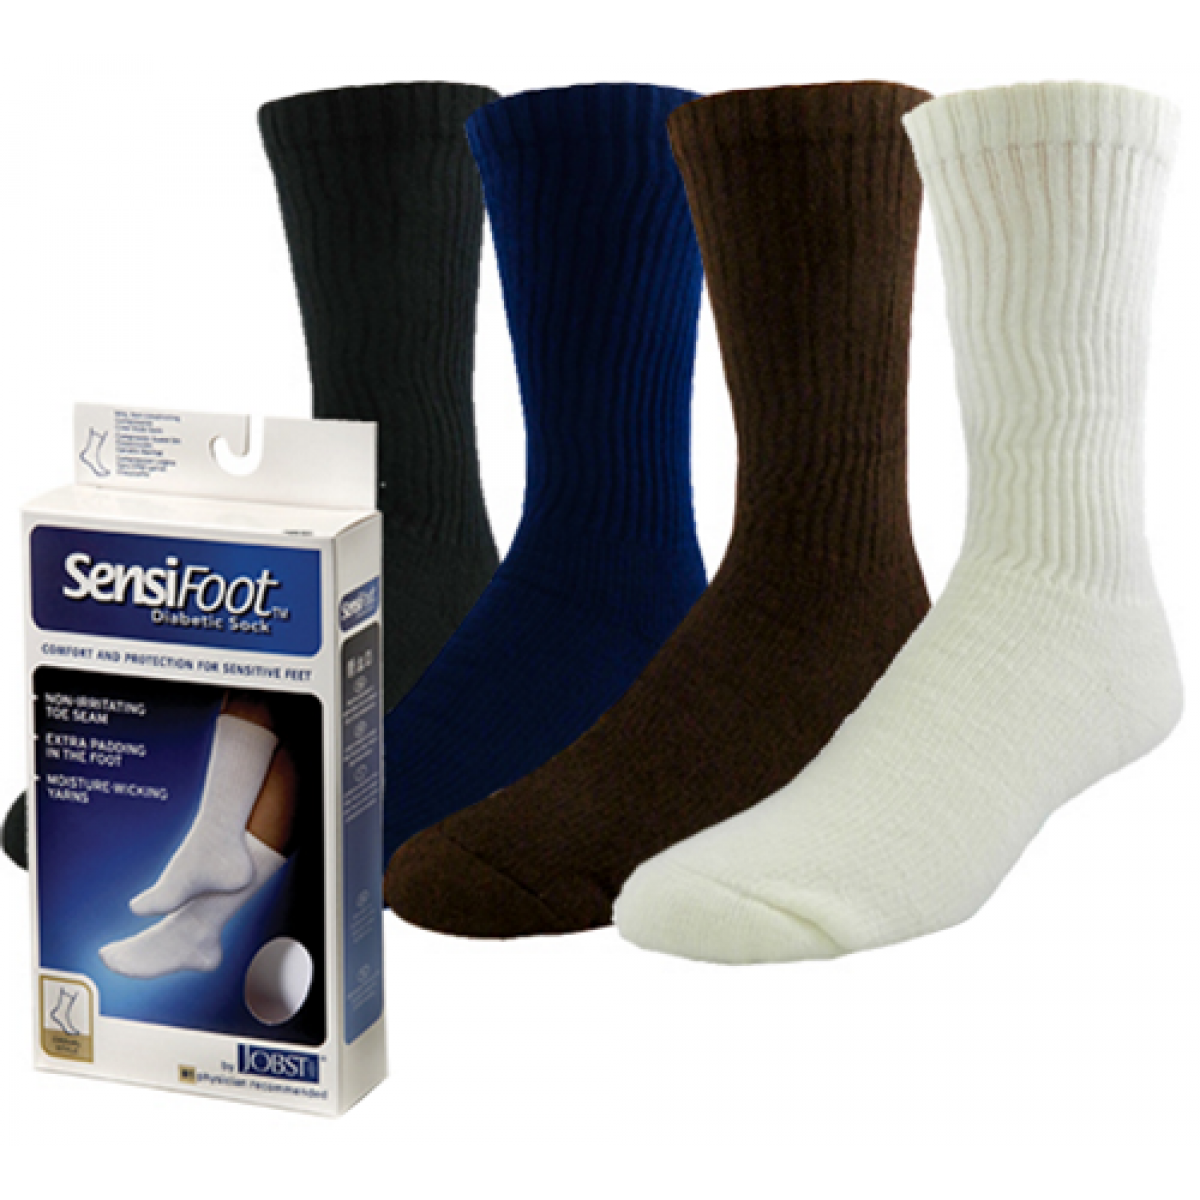 Sensifoot Socks